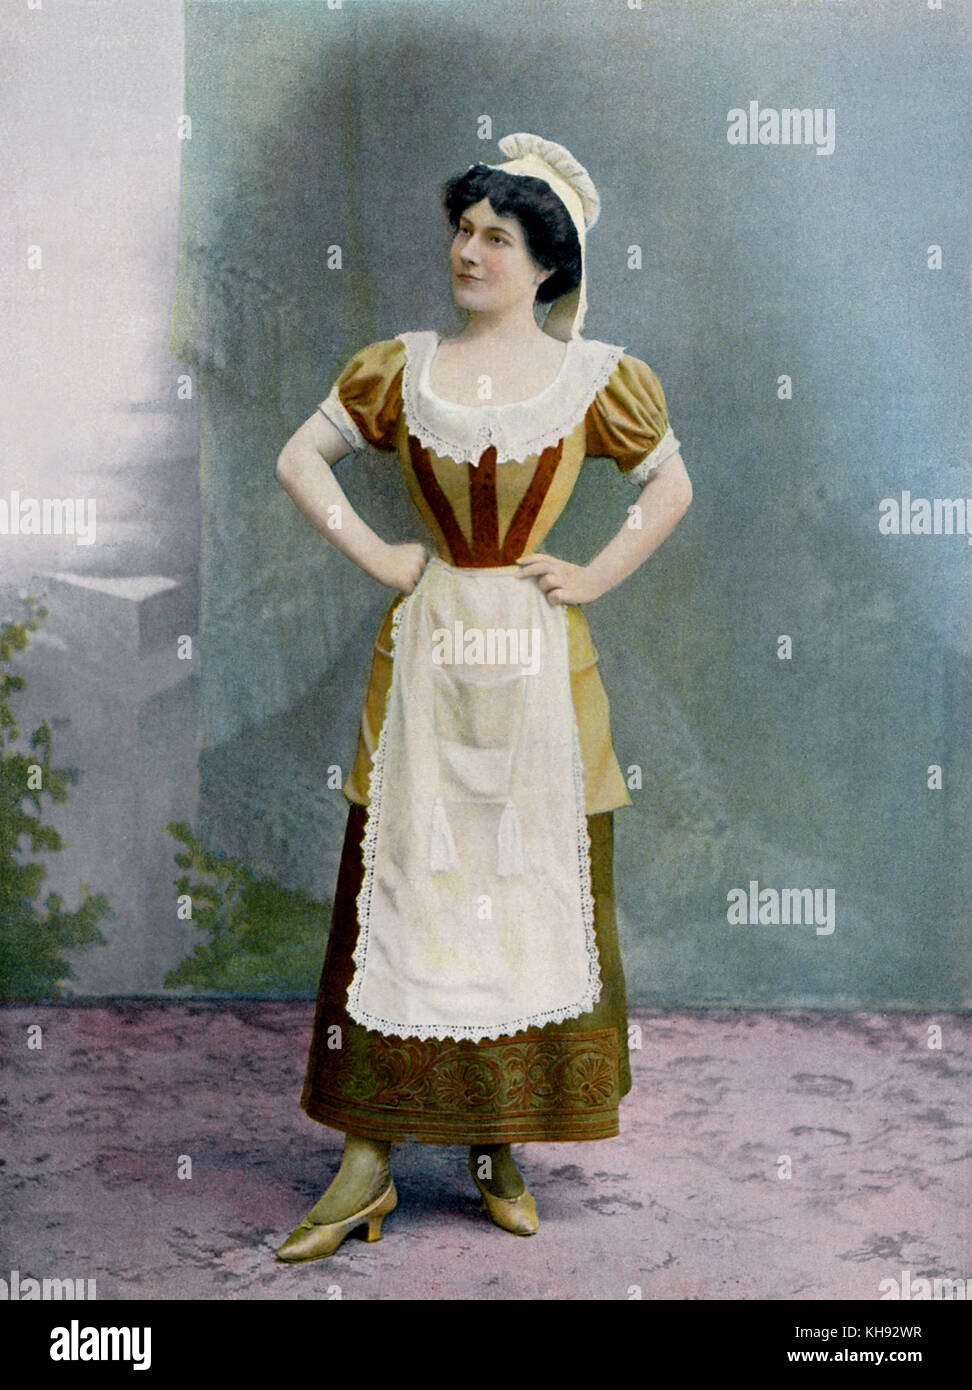 Mlle de Craponne as Lisette in 'Le Légataire universel' - play by Jean-François Regnard (originally 1708). Production at Théatre National de l'Opéra- Comique, c. 1901. Stock Photo